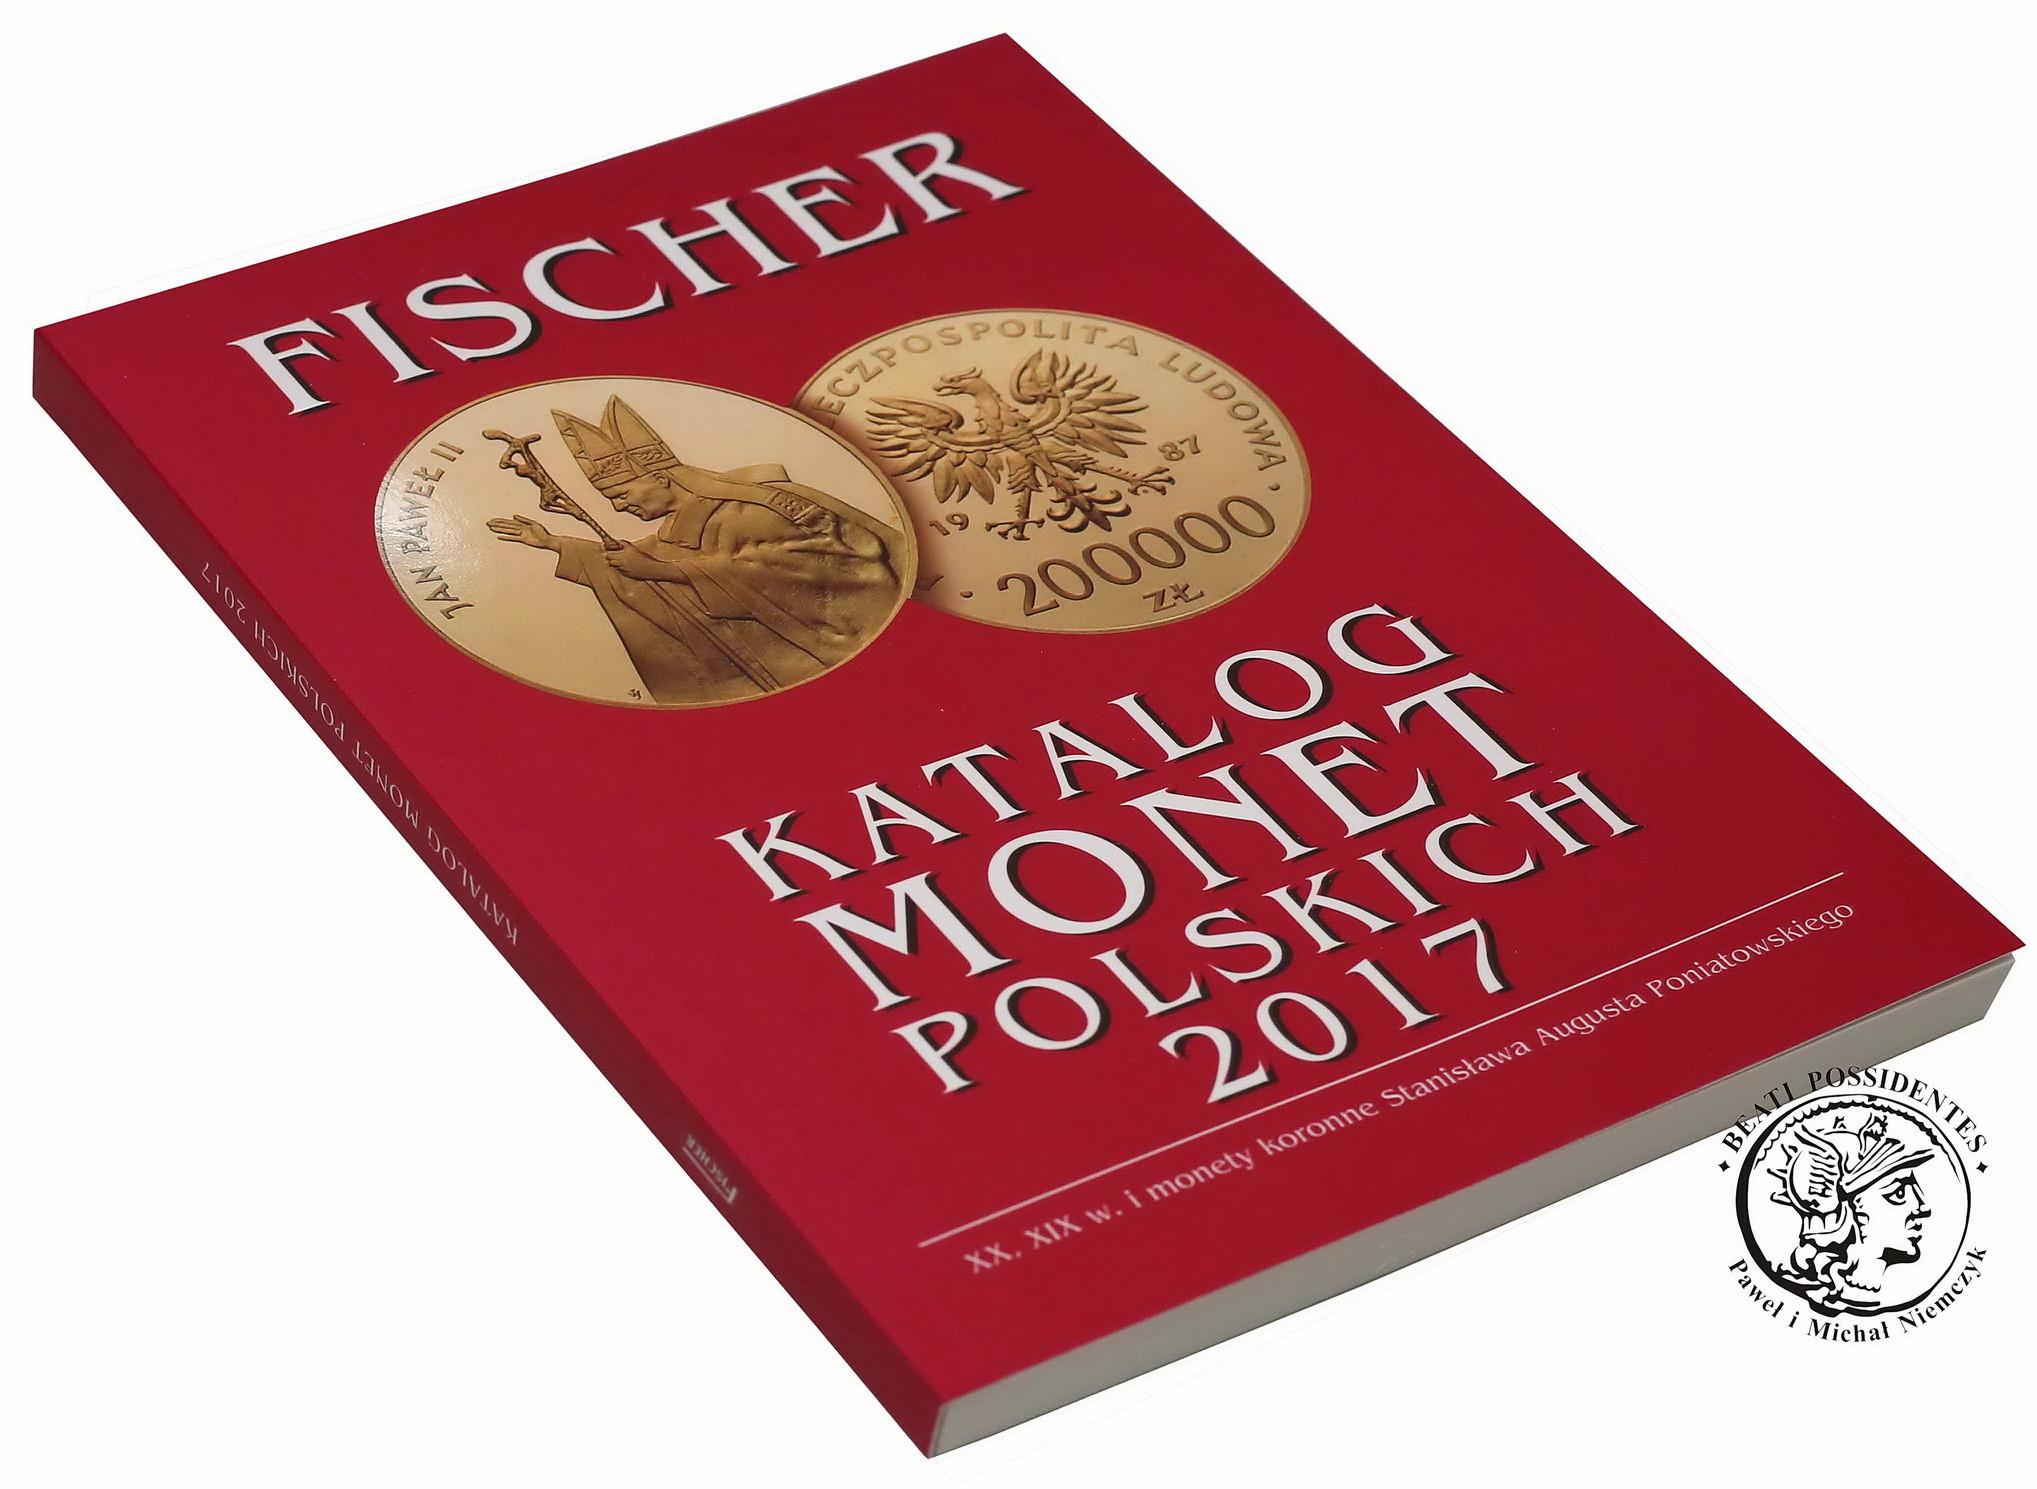 FISCHER 2017 - KATALOG MONET POLSKICH